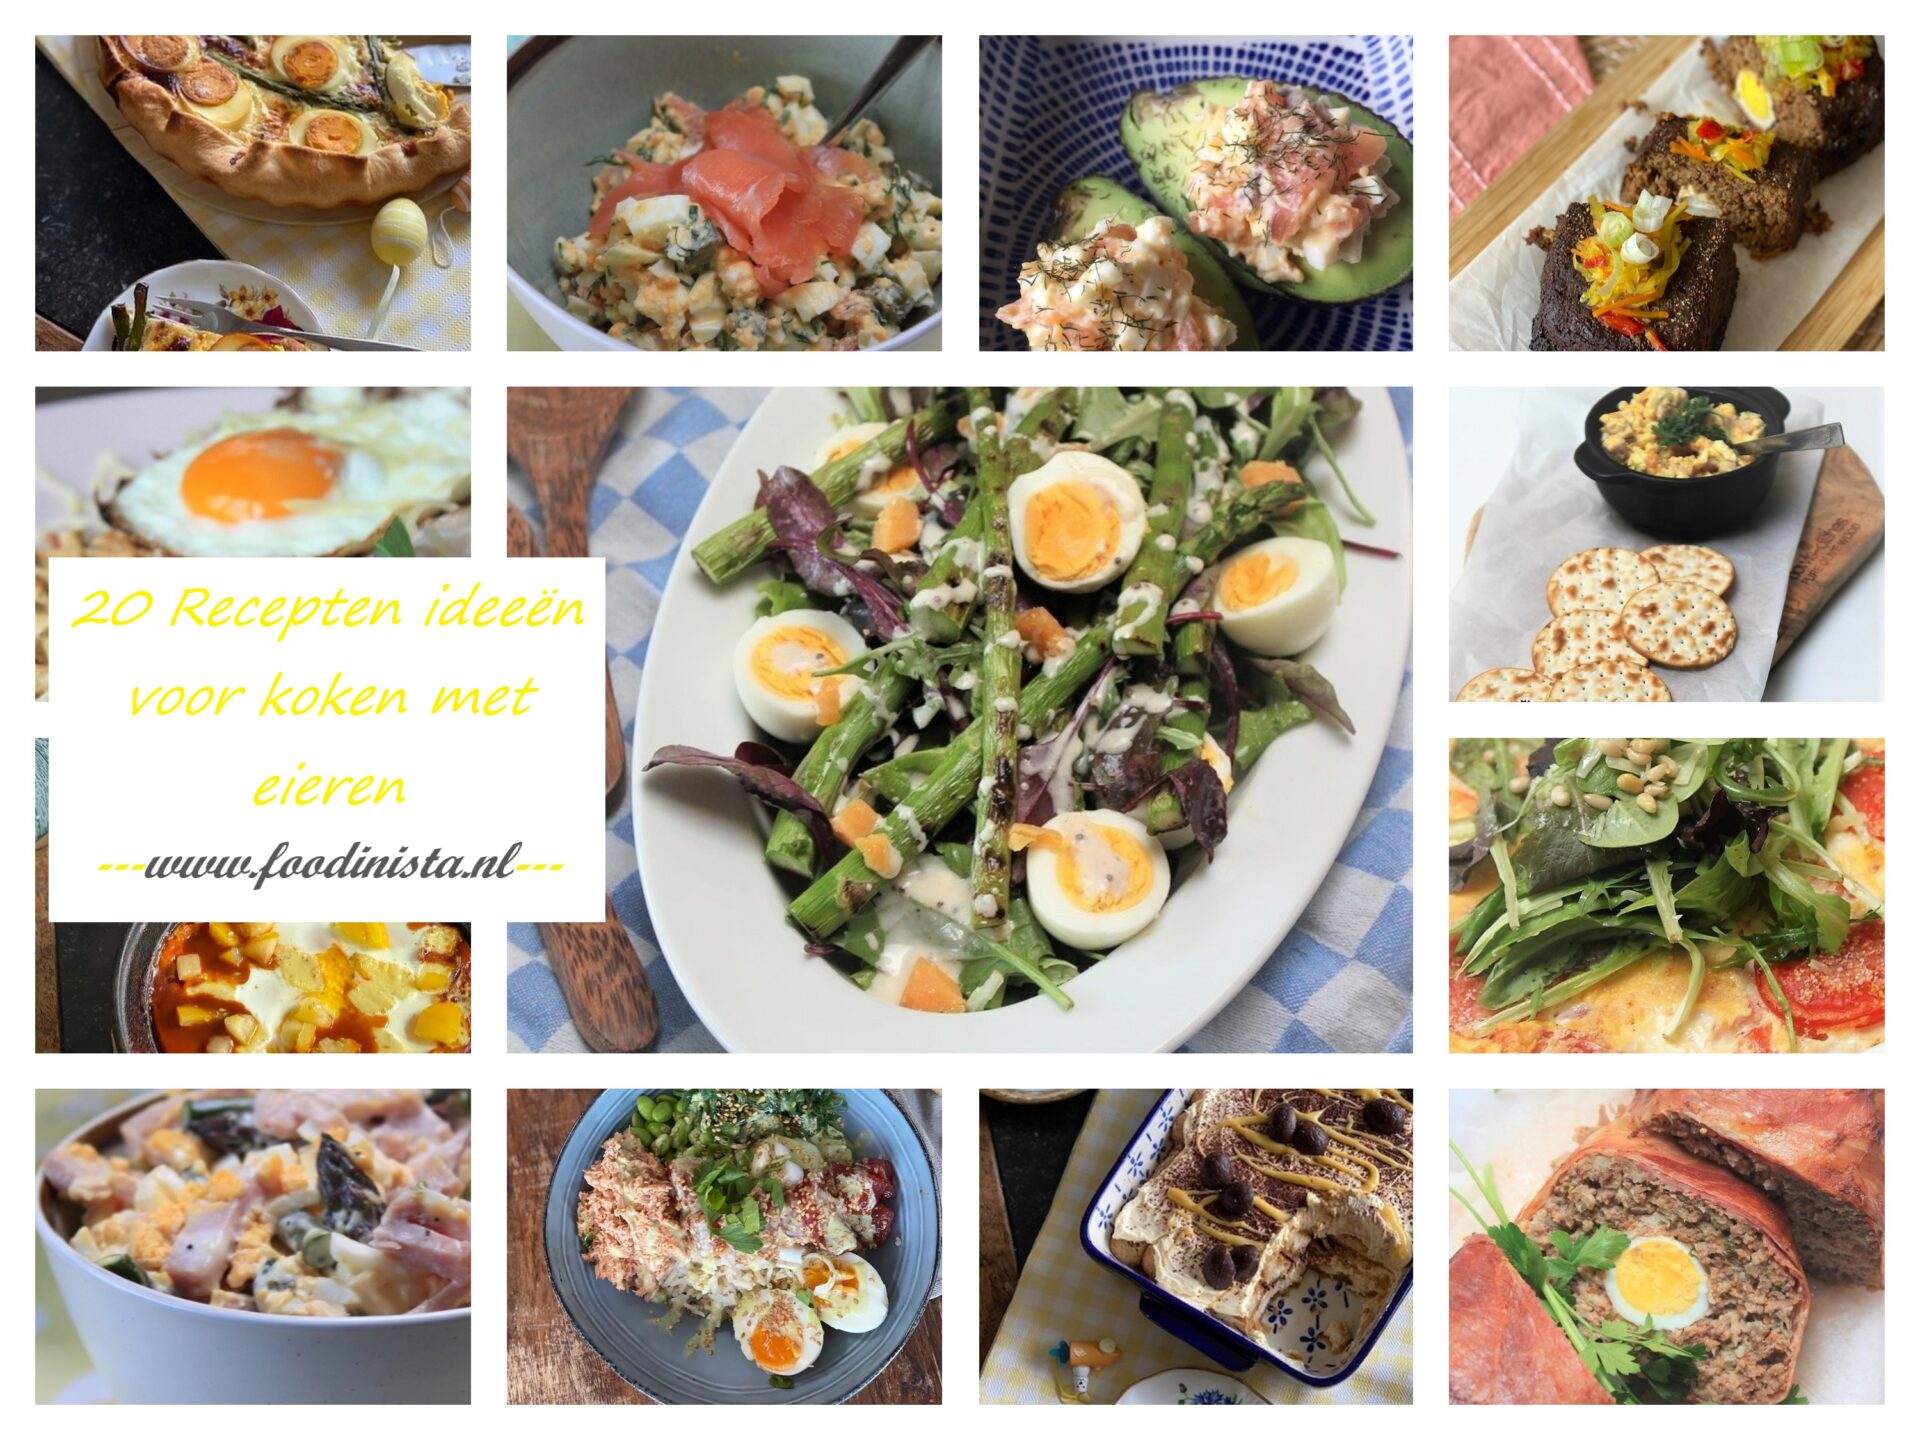 20 Recepten ideeën voor koken met eieren - Foodblog Foodinista